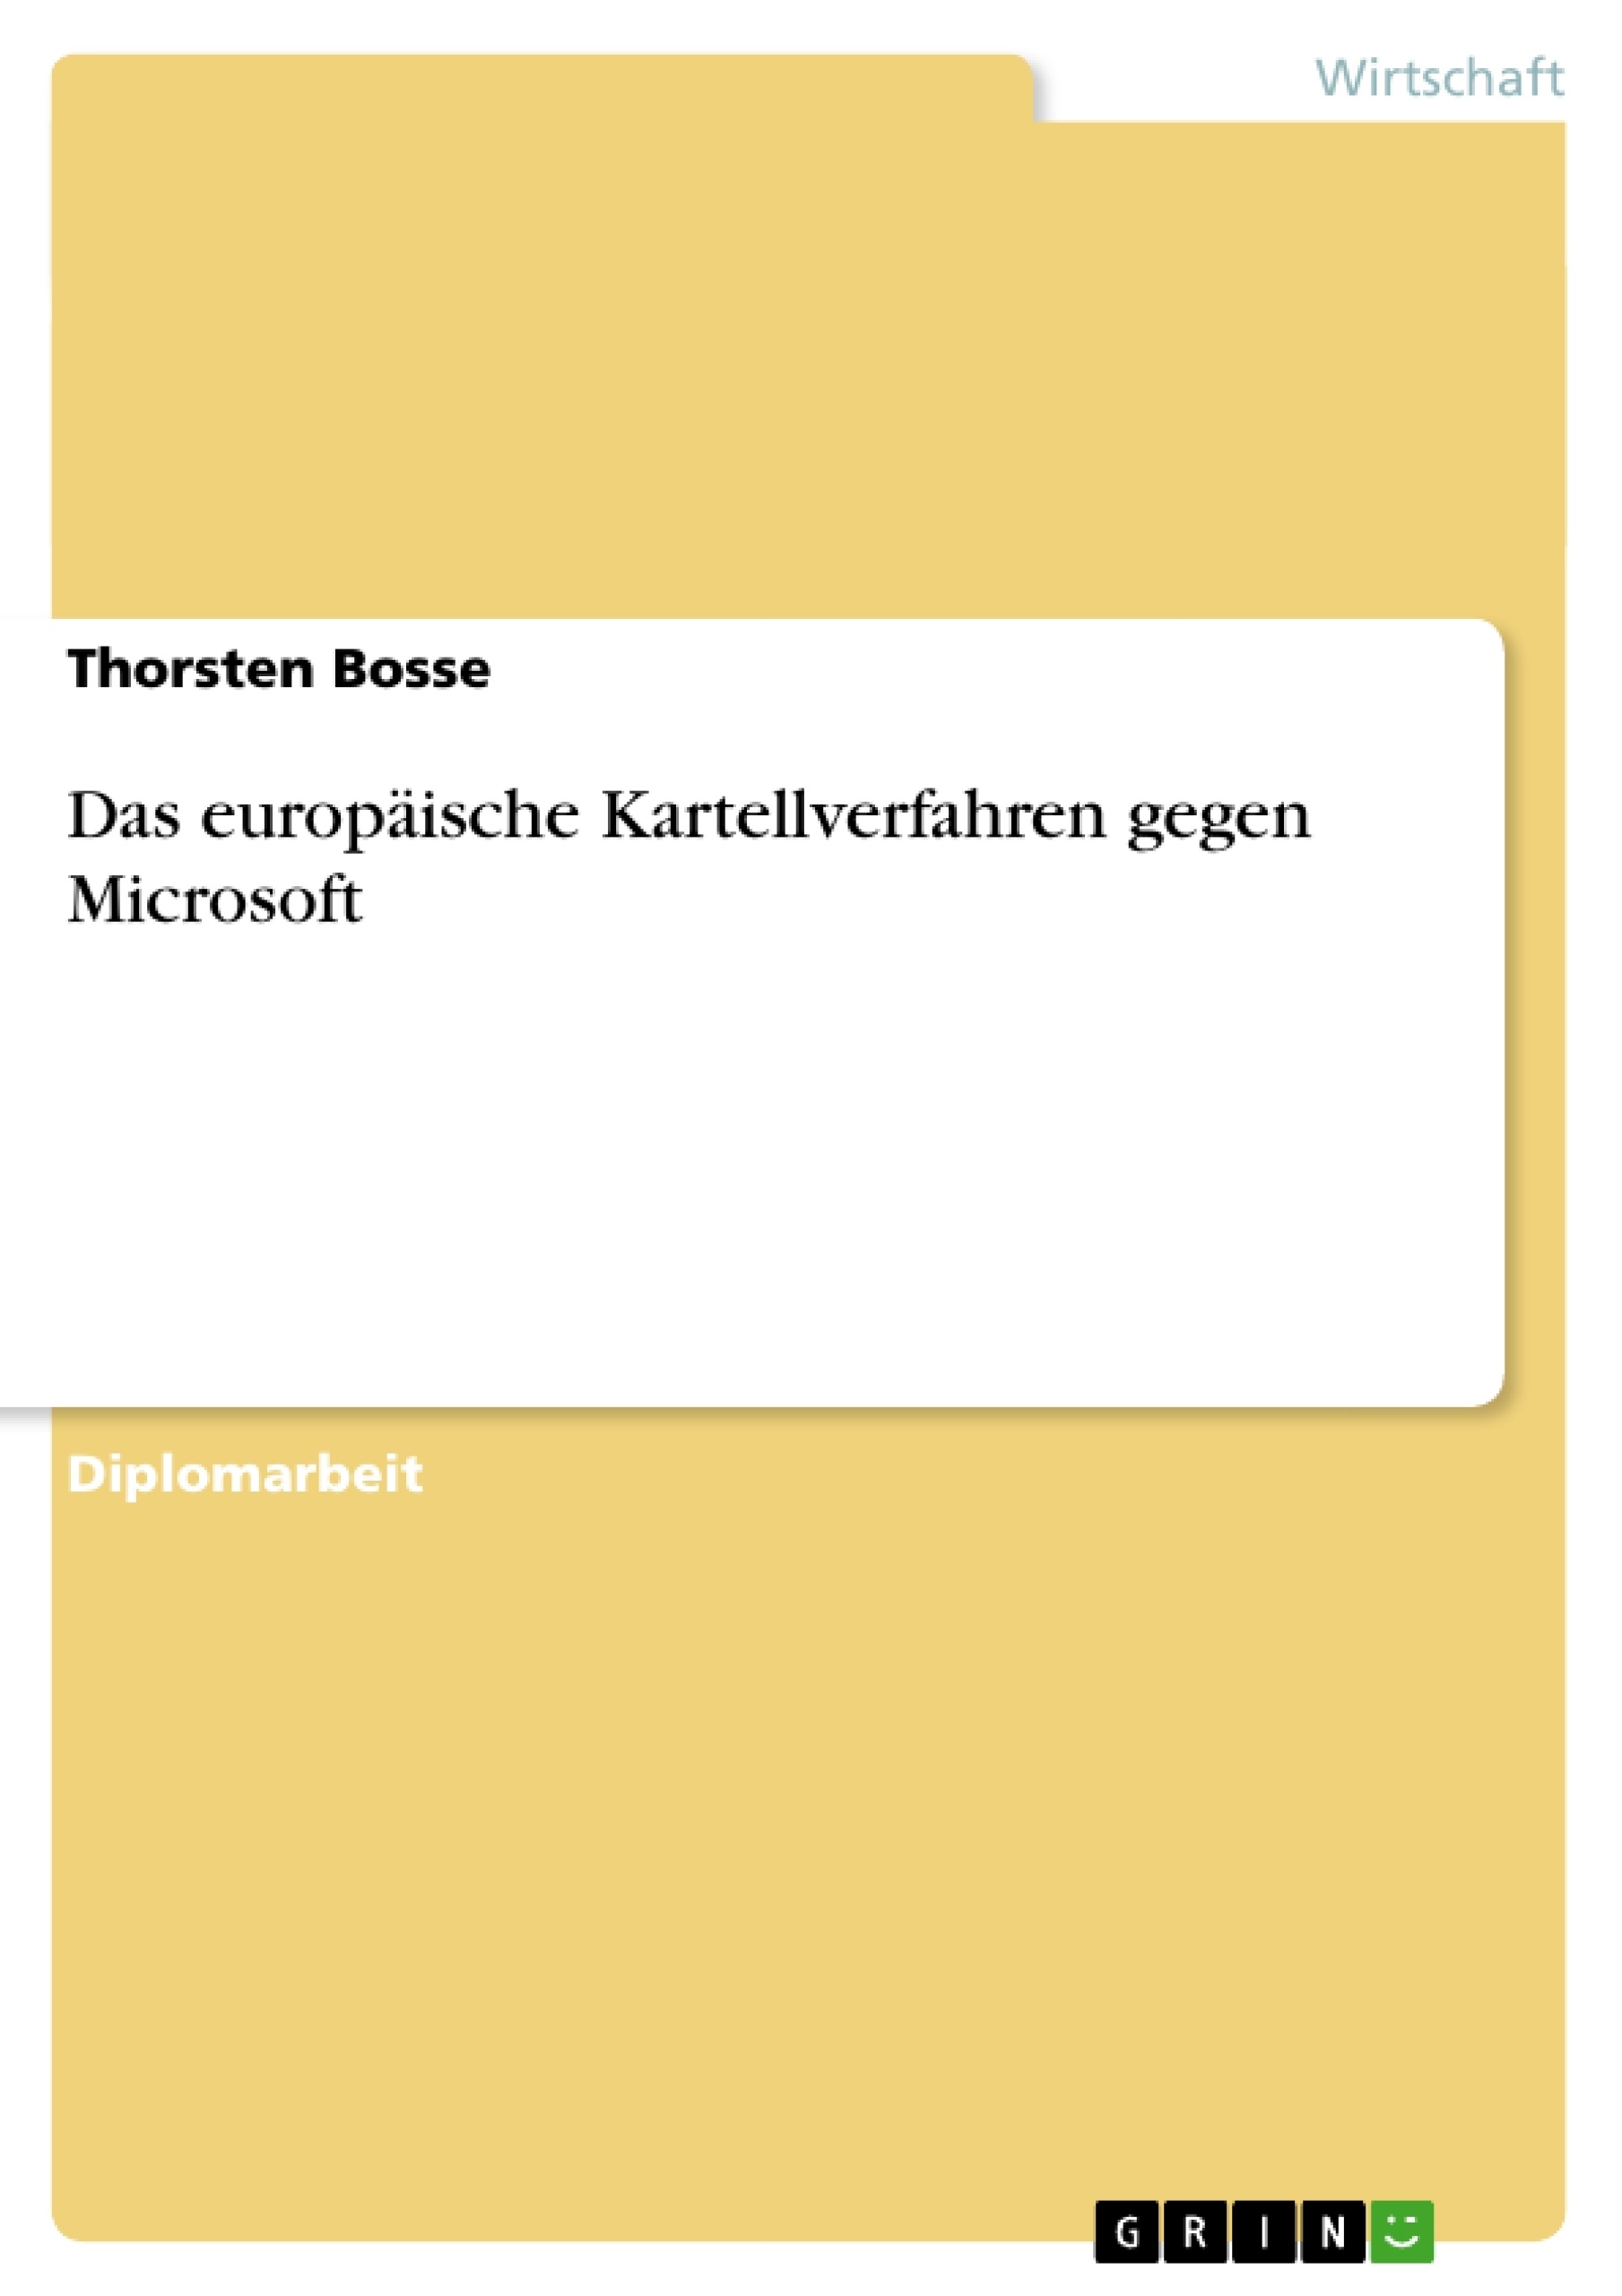 Titre: Das europäische Kartellverfahren gegen Microsoft